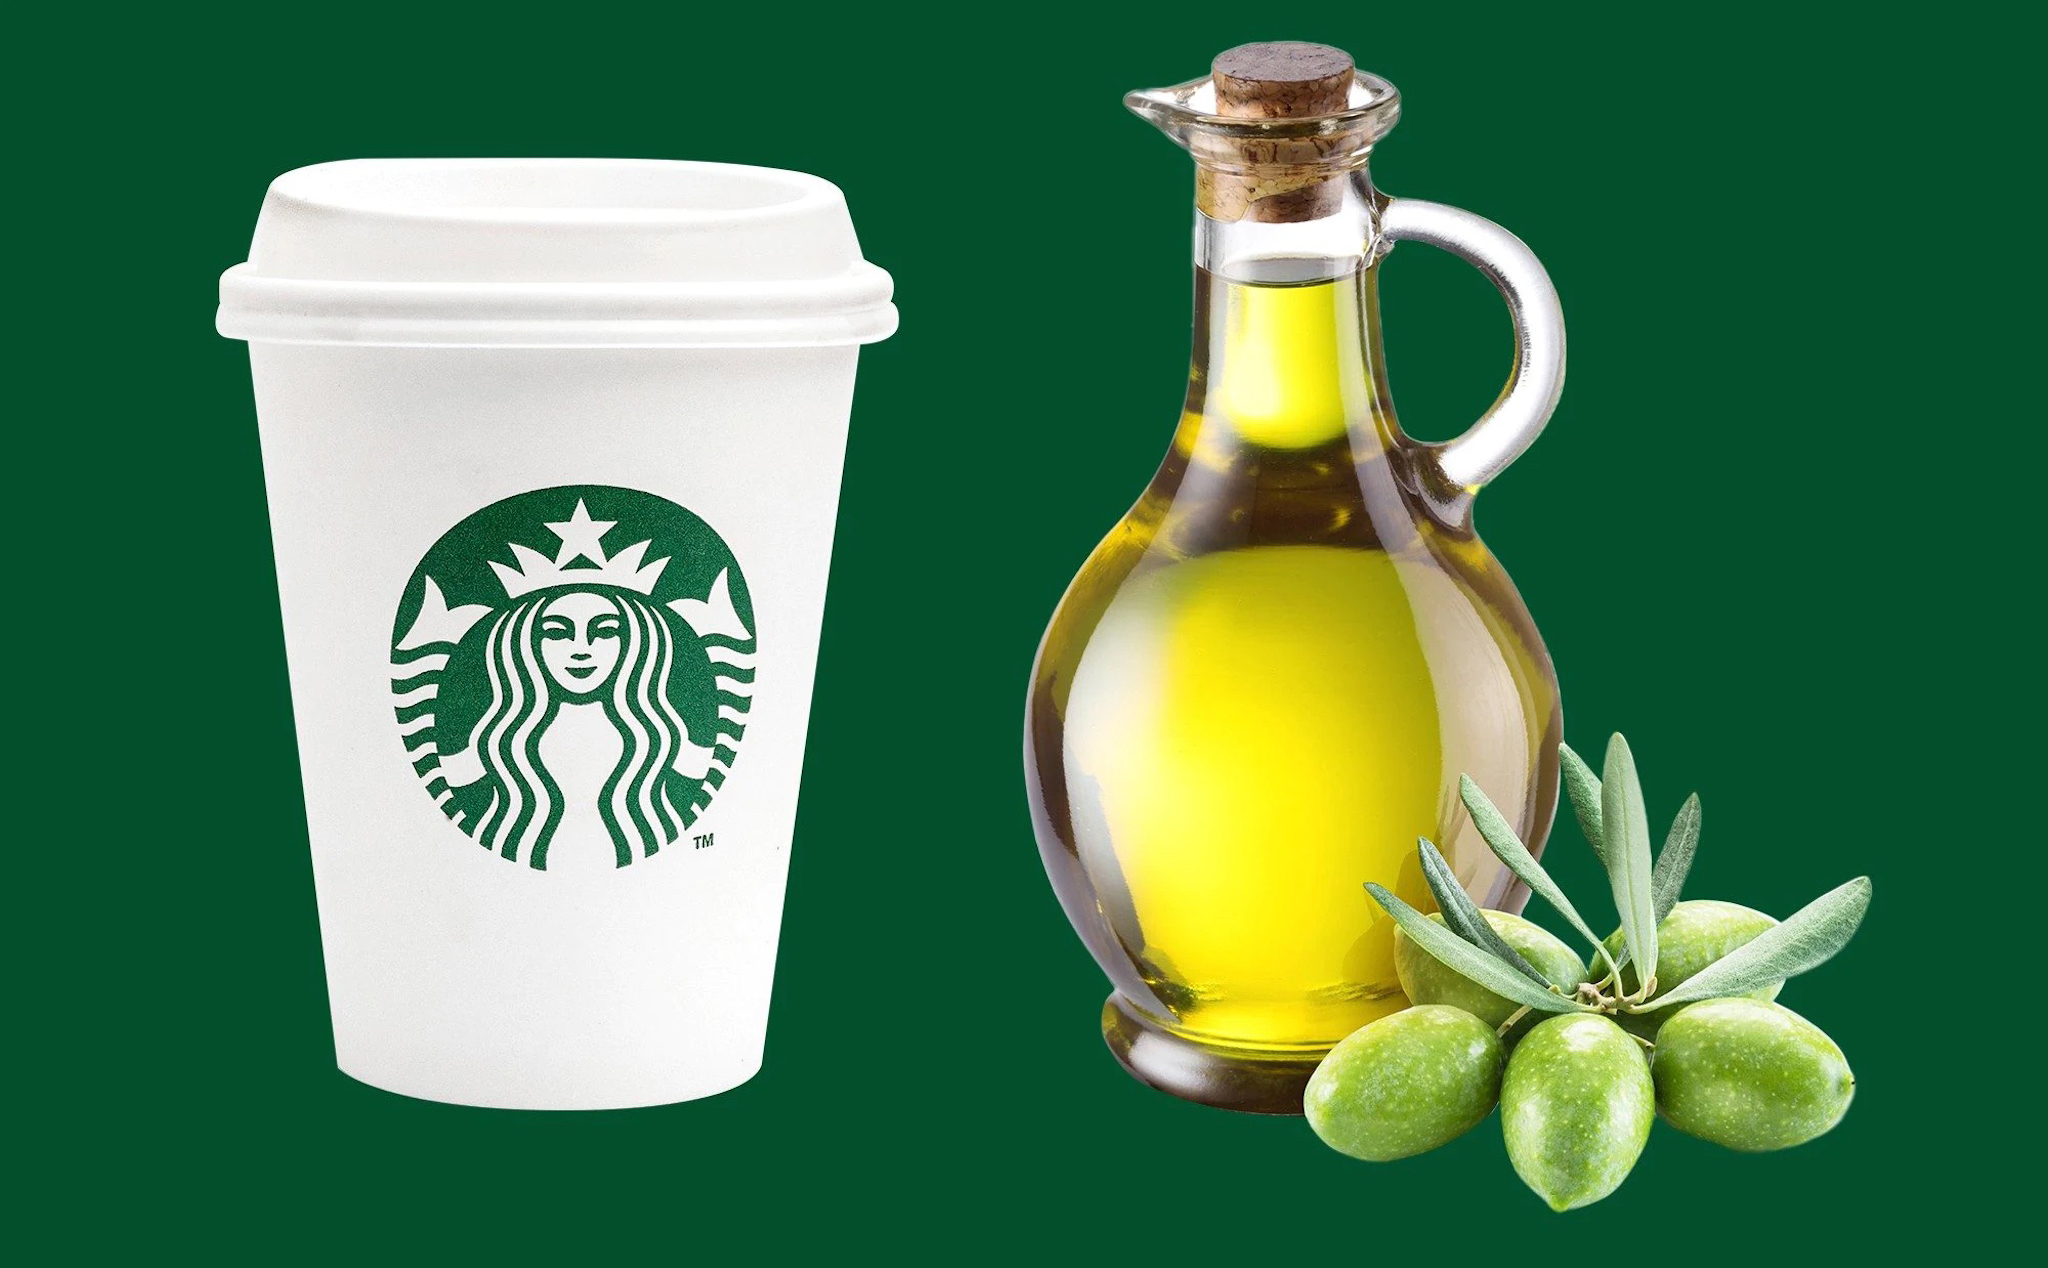 Anh em nghĩ sao về ý tưởng thêm dầu oliu vào cà phê đá của Starbucks?